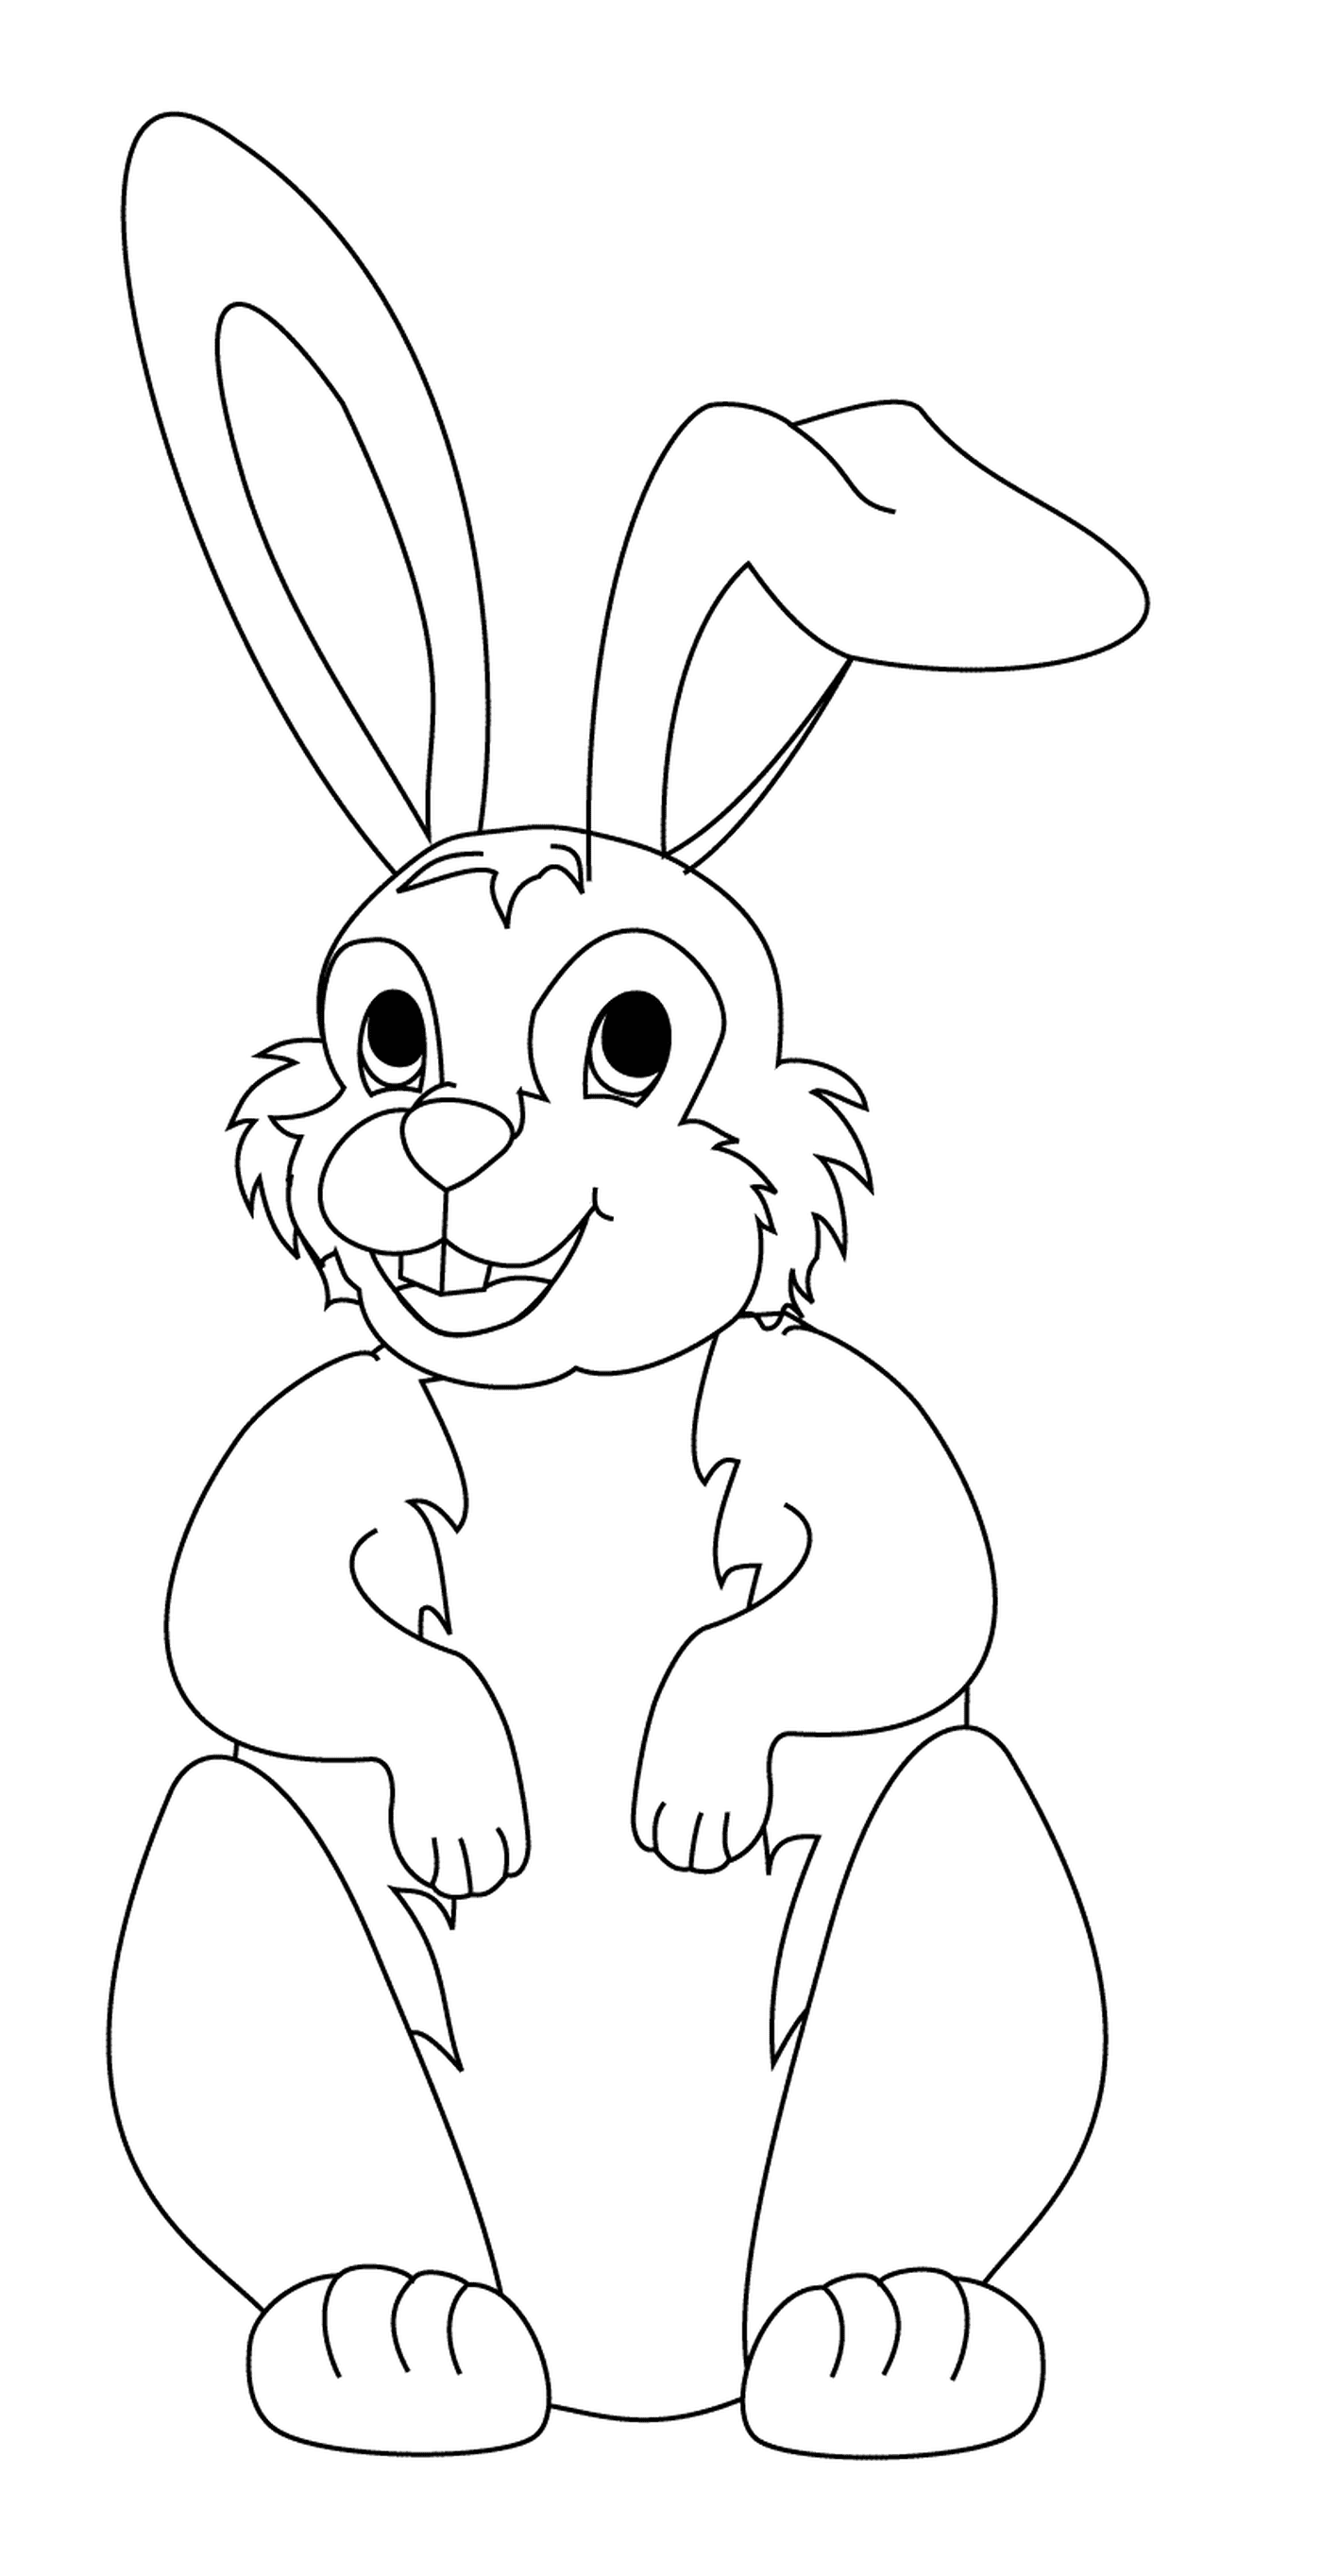  Прекрасный пасхальный кролик с длинными ушами 